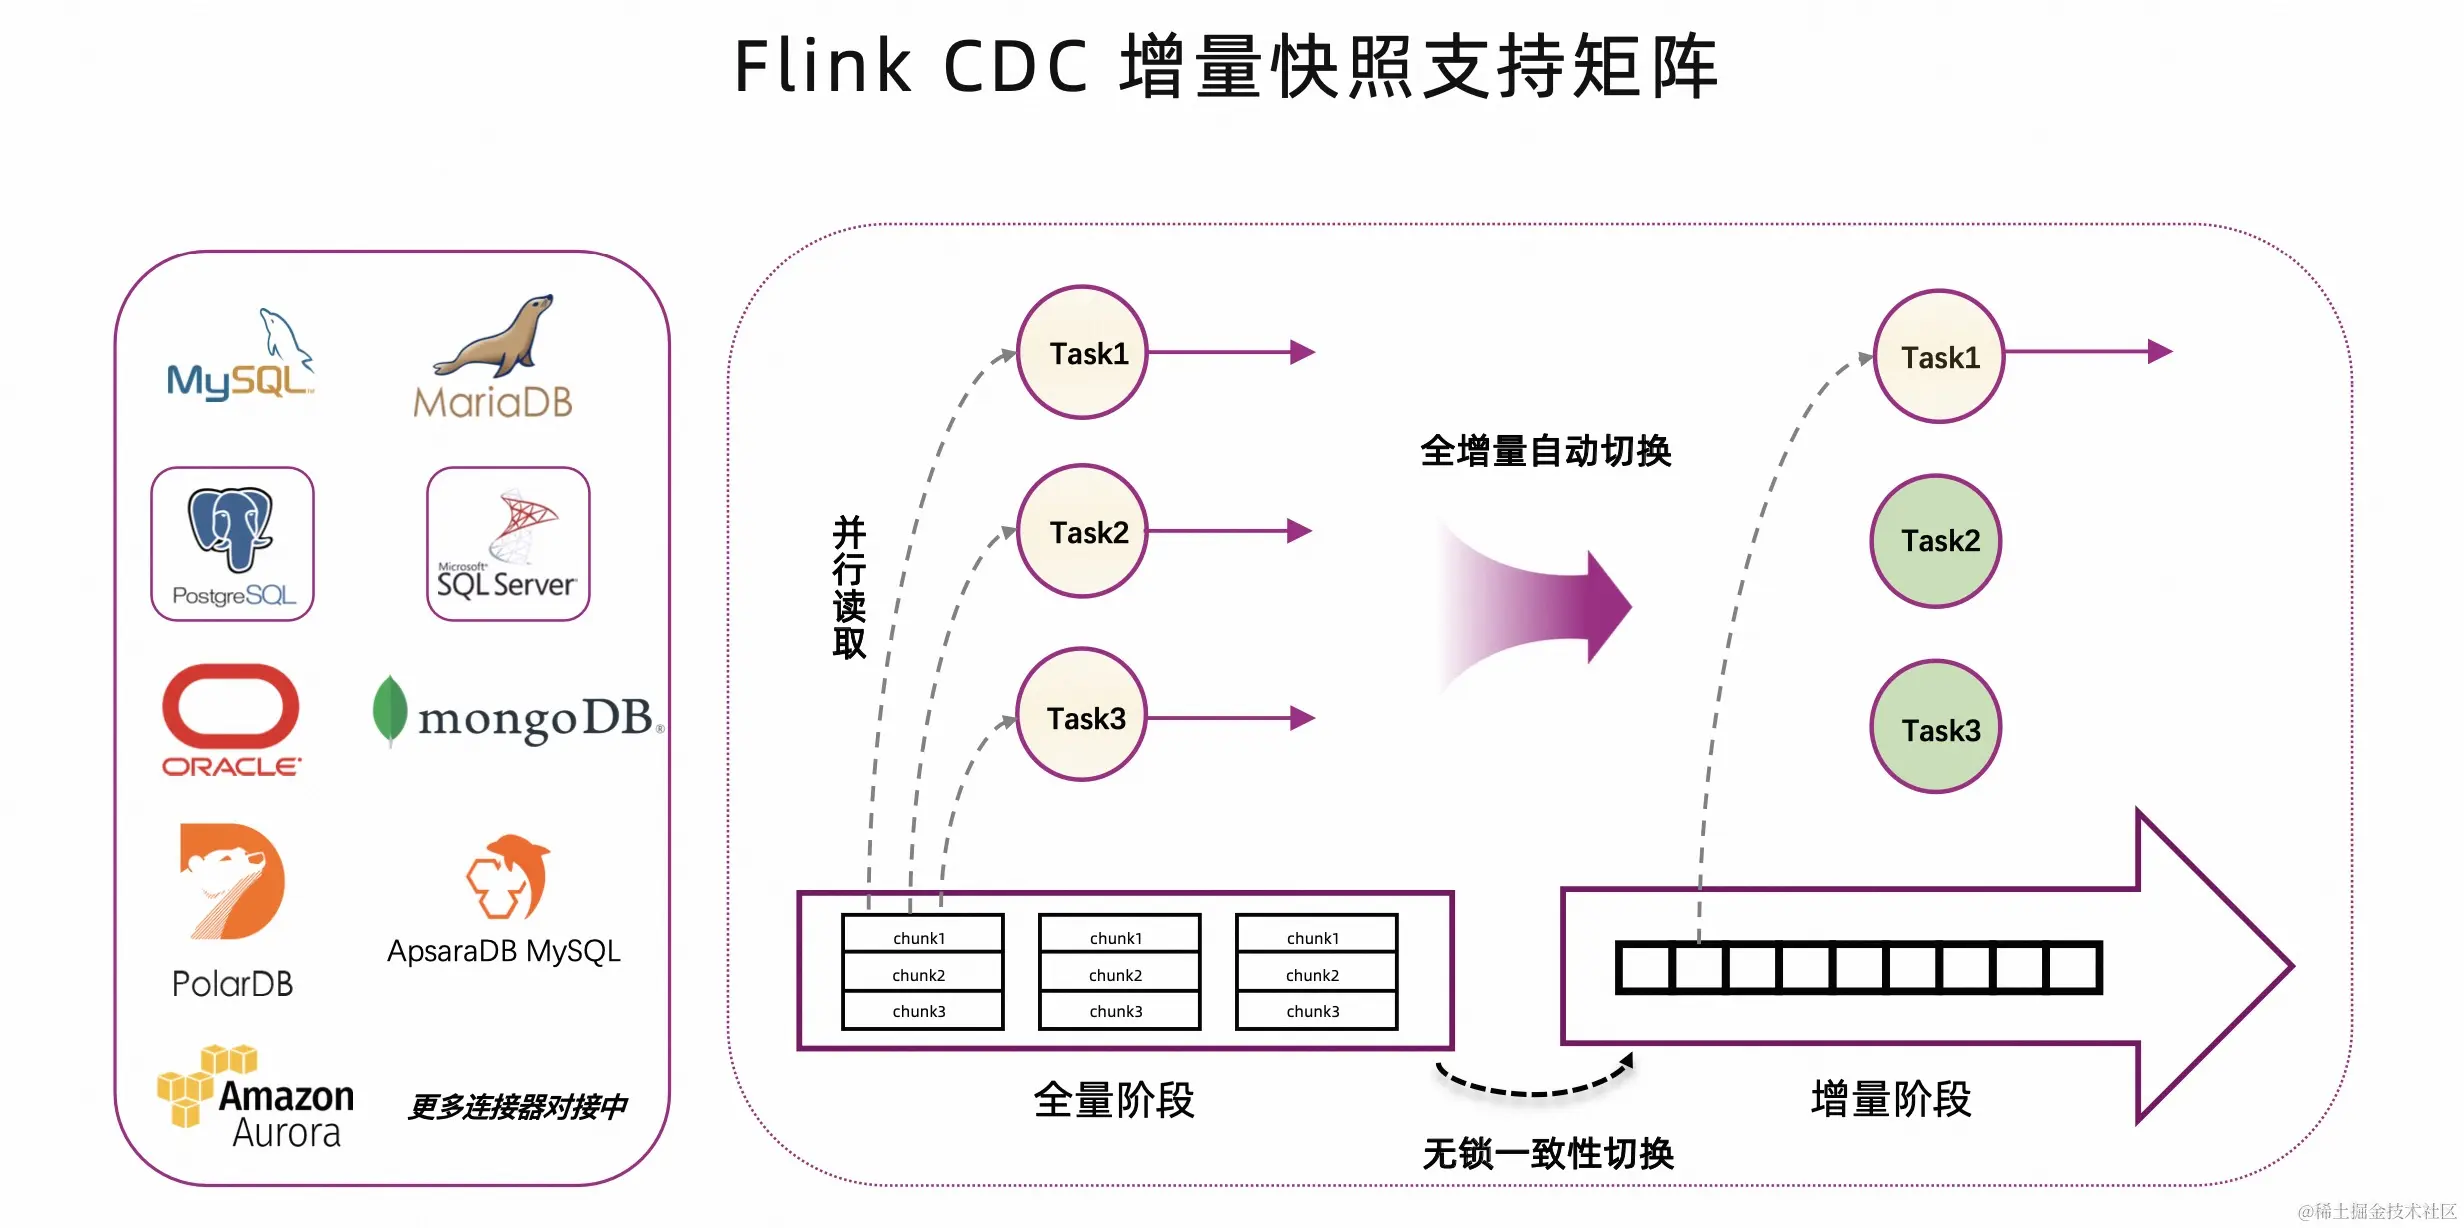 基于 Flink CDC 高效构建入湖通道_Flink_06